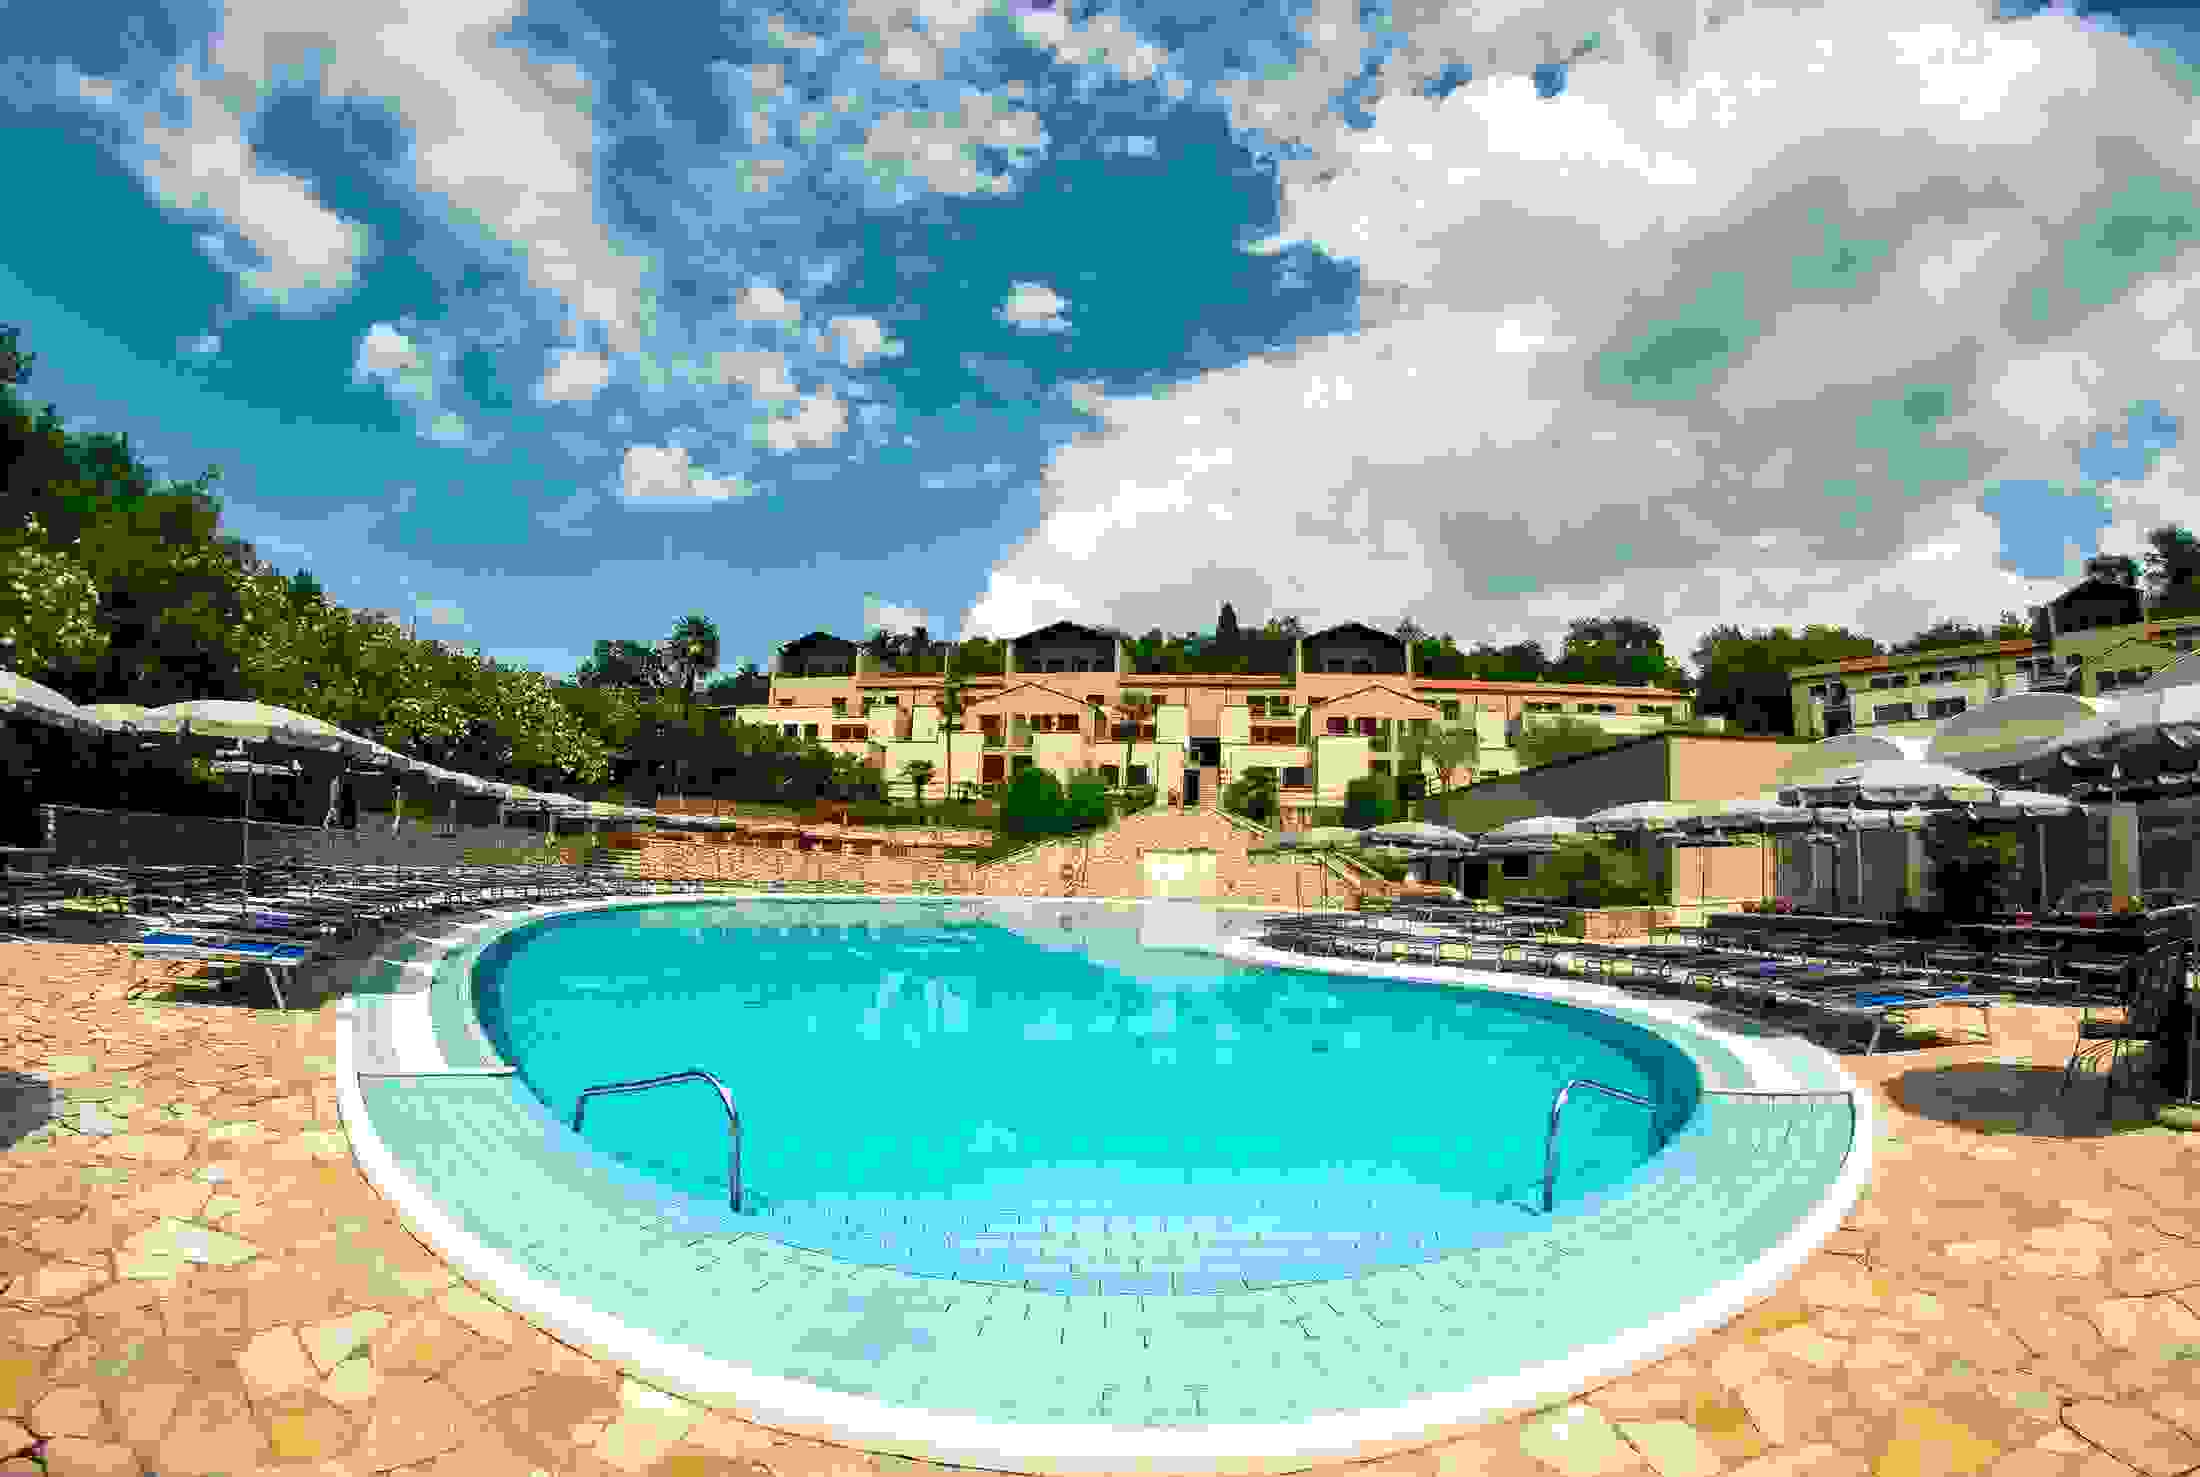 Pool & Resort 1++